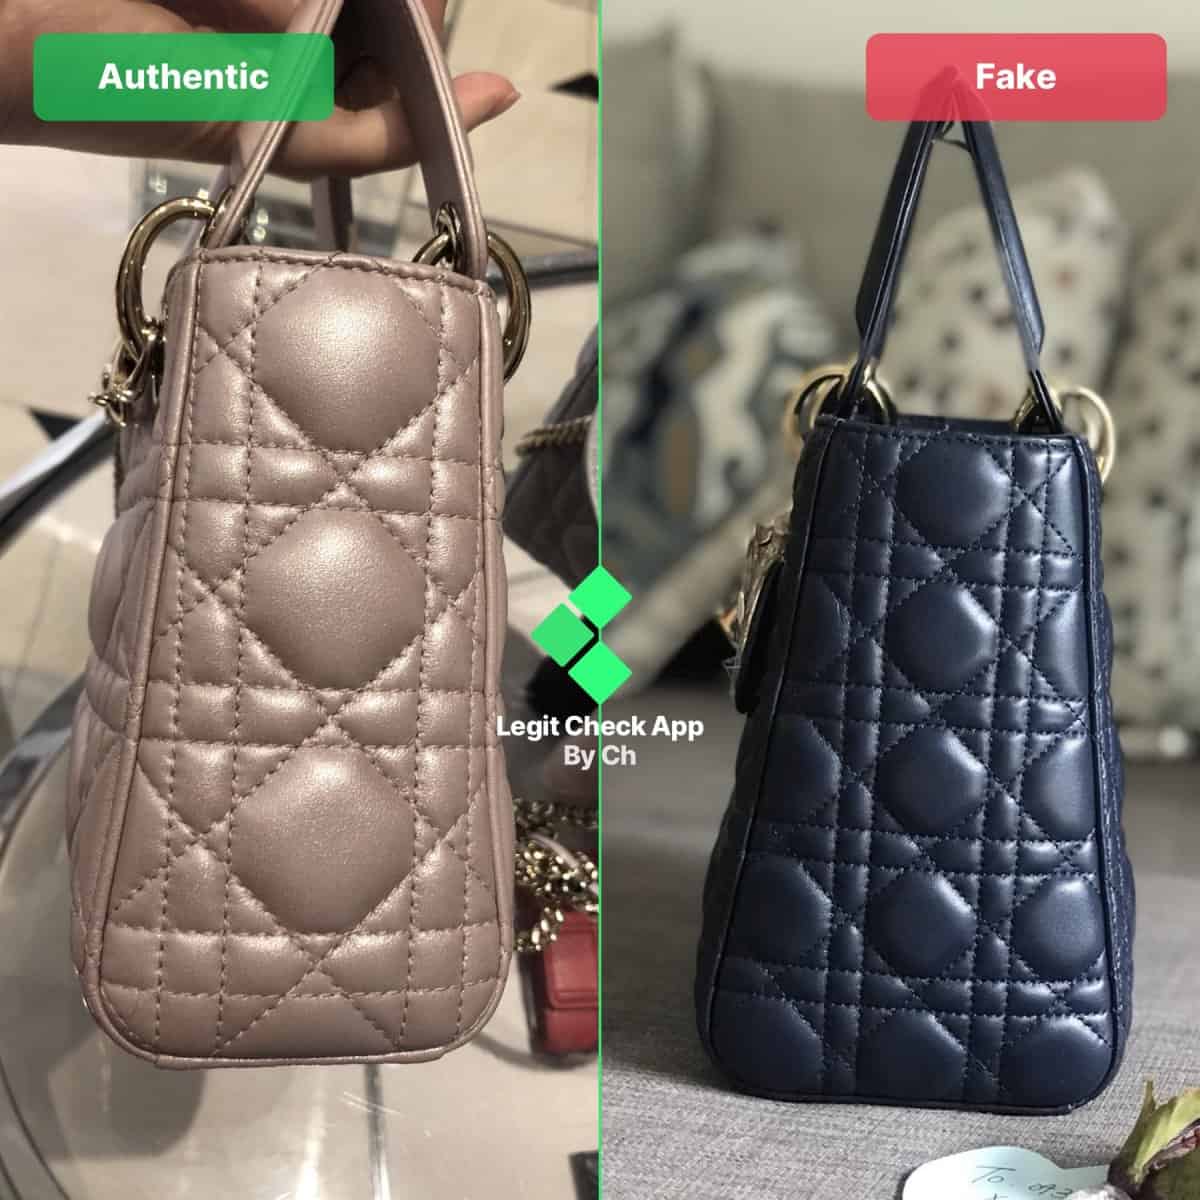 dior lady bag real vs fake